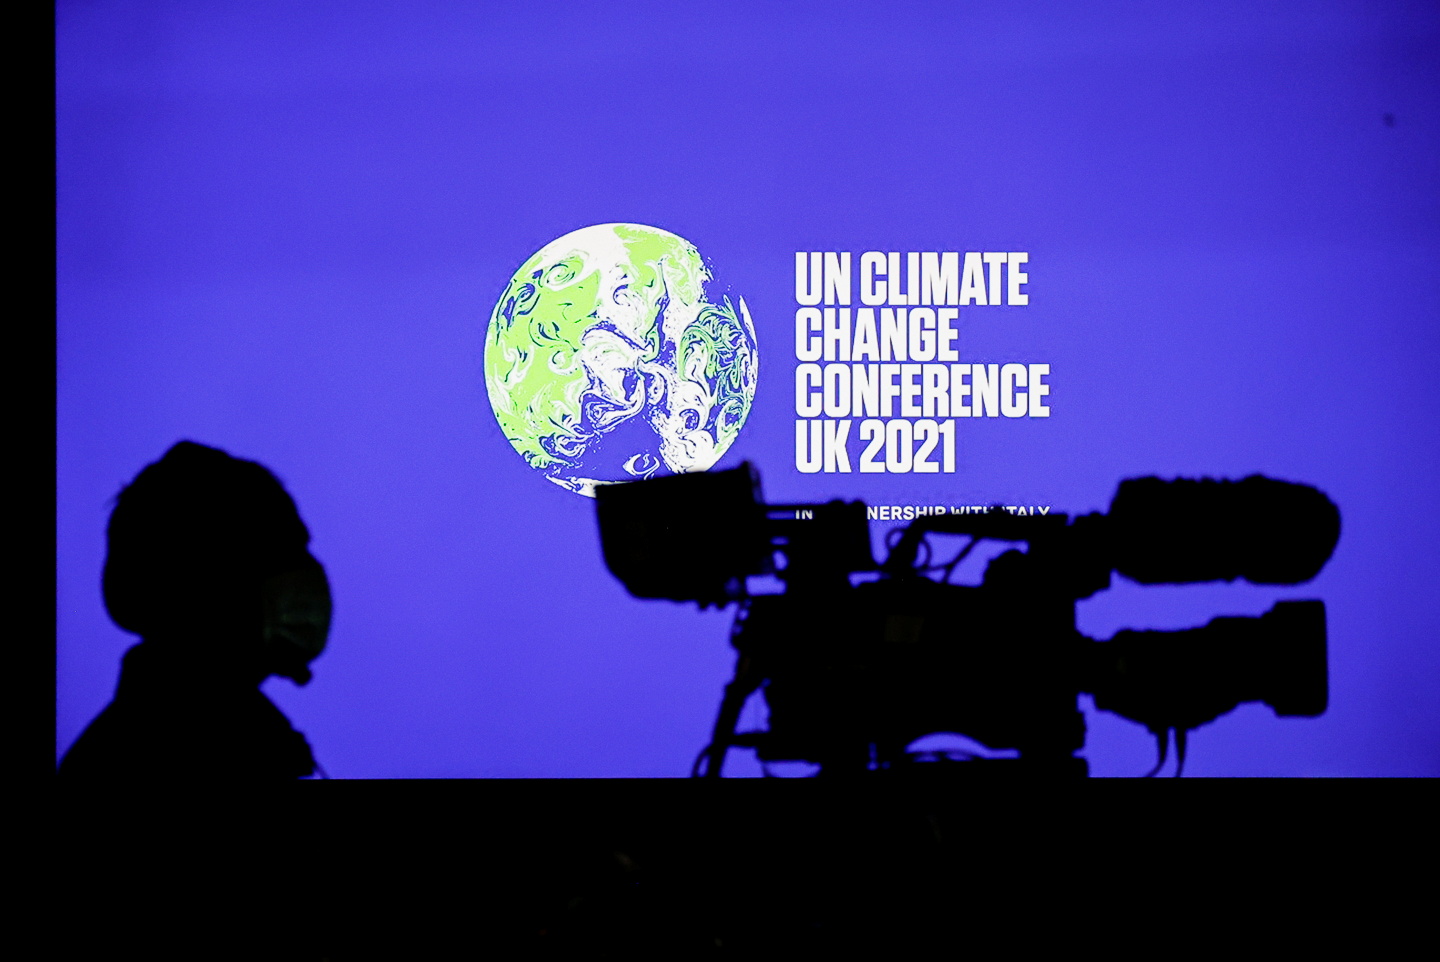 Tras una semana de anuncios y deliberaciones, la COP26 busca ahora un ambicioso consenso final